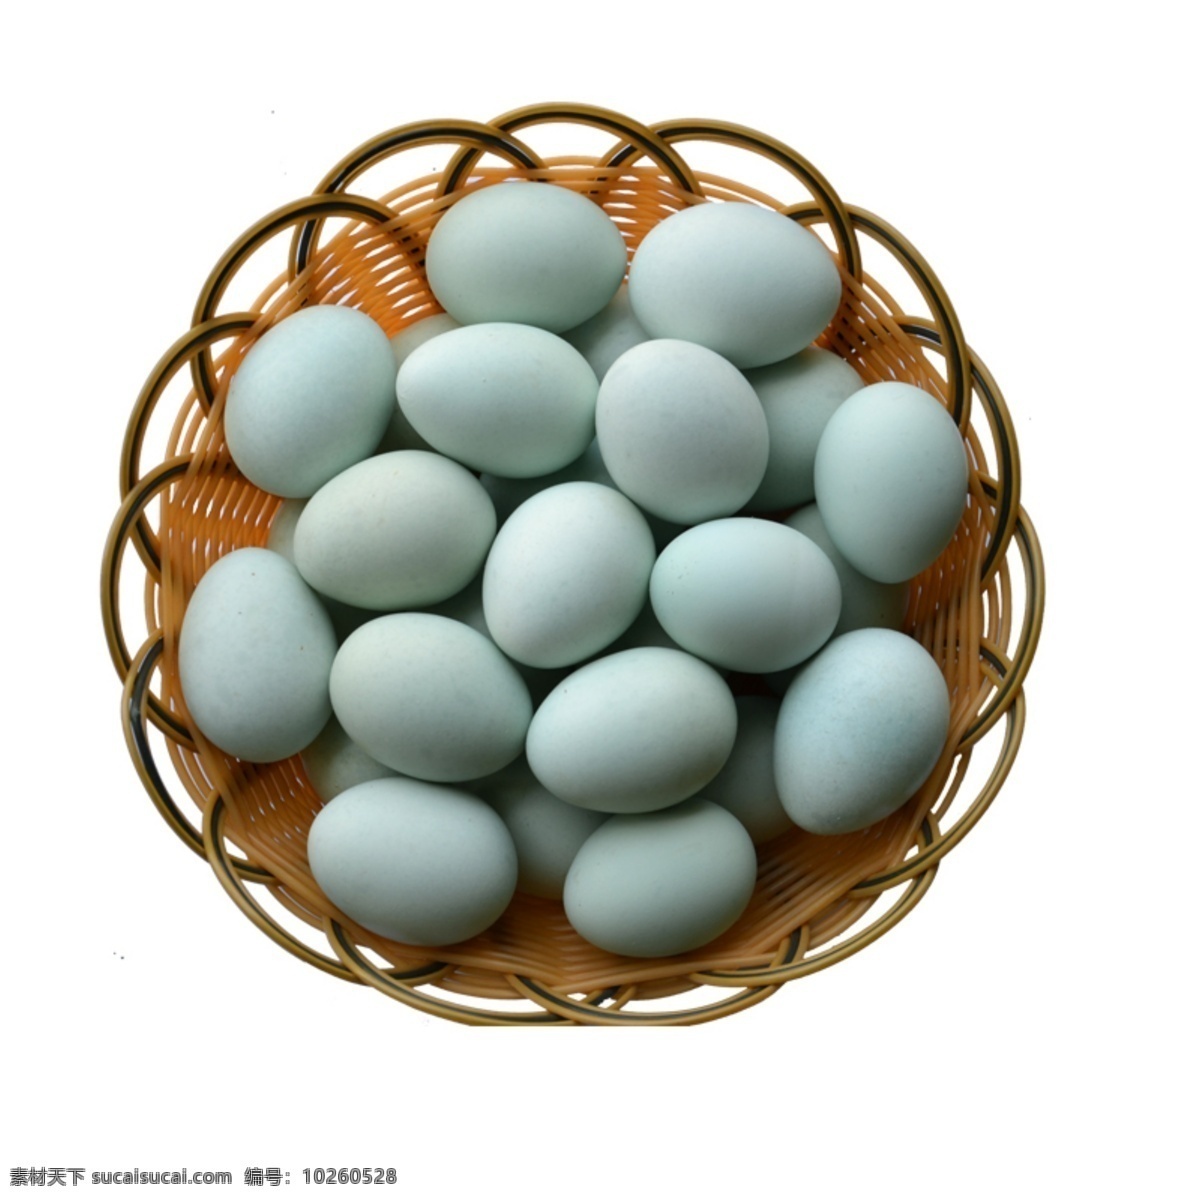 鸡蛋 鸭蛋 俯视图 动物 卵生 食物 餐饮 生命 奇迹 竹篮 竹筐 元素 篮子 鹅蛋 破壳 营养